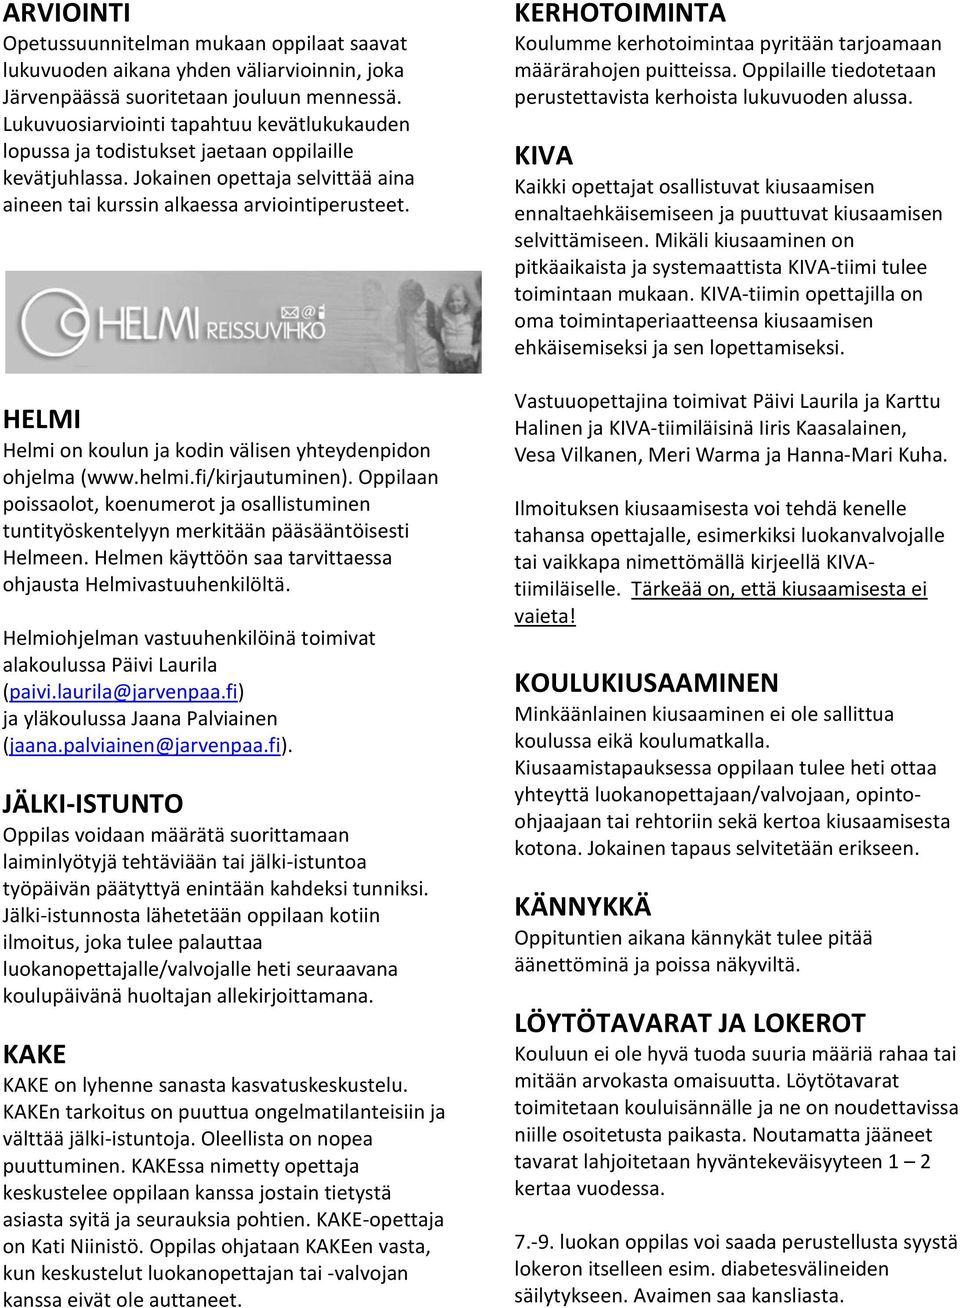 HELMI Helmi on koulun ja kodin välisen yhteydenpidon ohjelma (www.helmi.fi/kirjautuminen). Oppilaan poissaolot, koenumerot ja osallistuminen tuntityöskentelyyn merkitään pääsääntöisesti Helmeen.